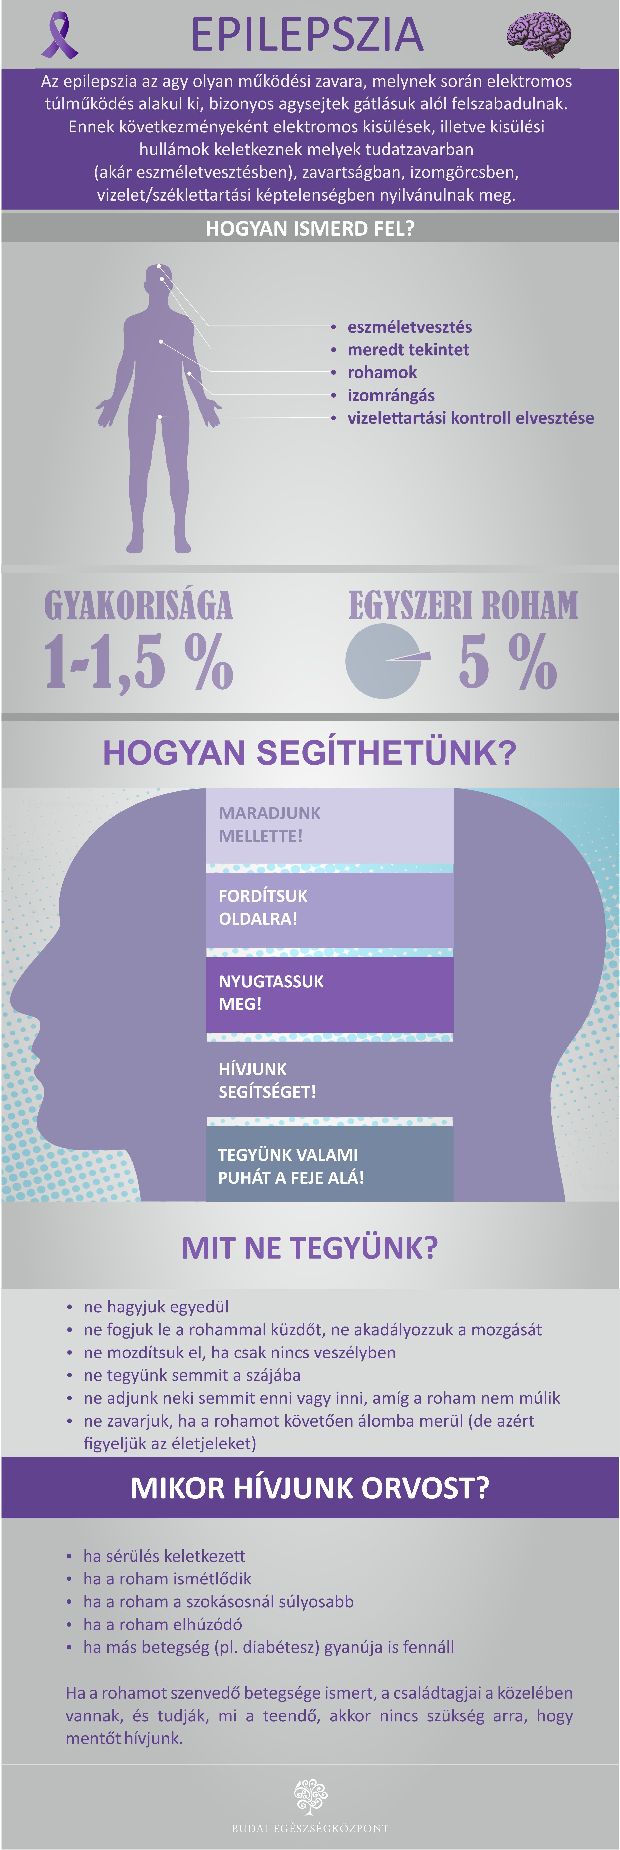 bhc-epilepszia-infografika.jpg